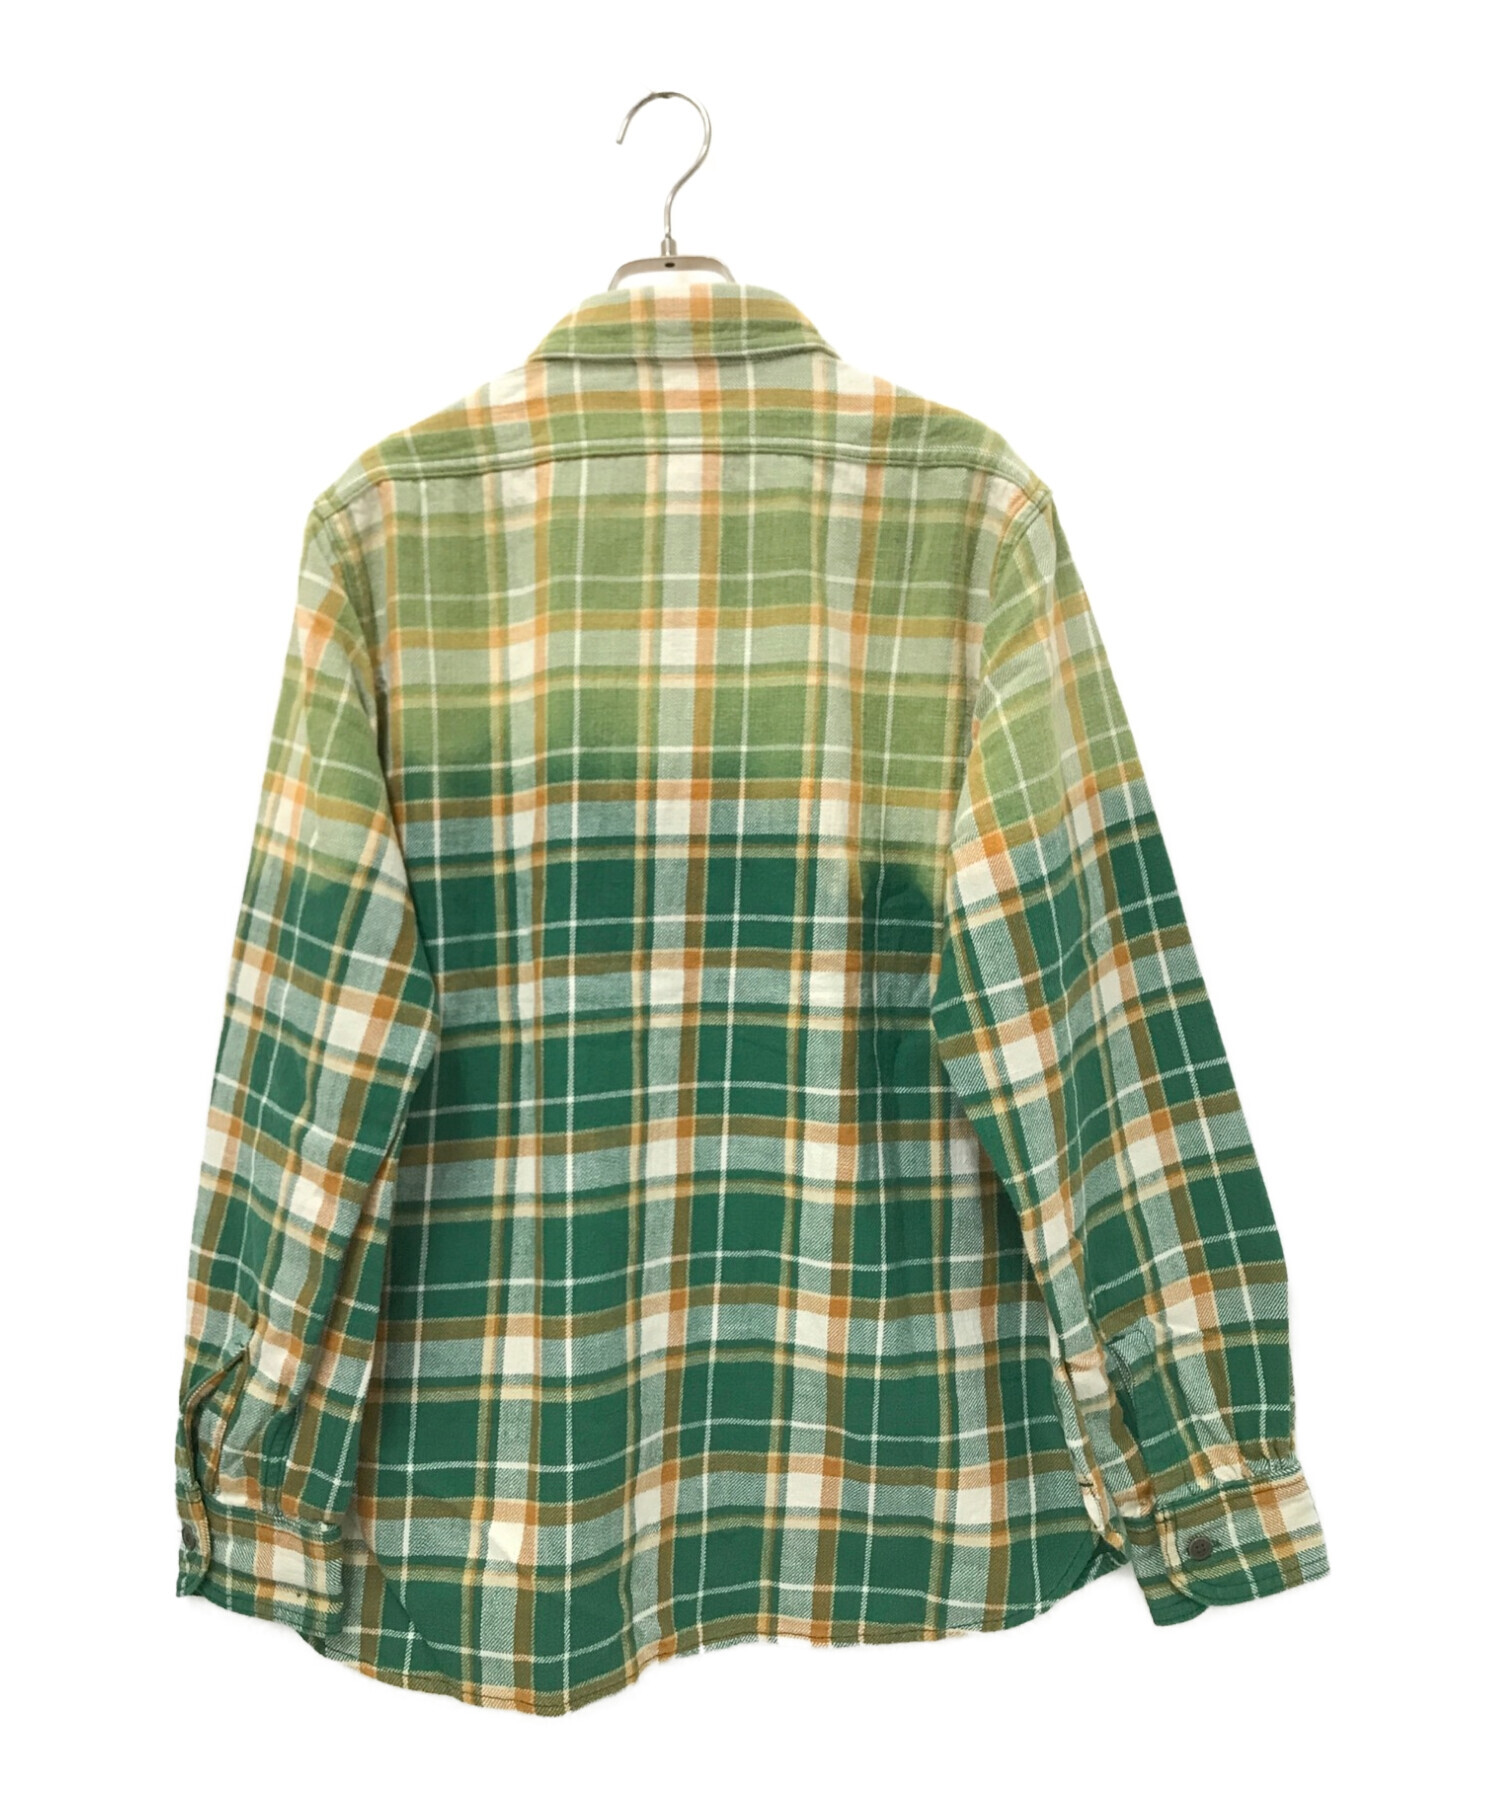 ナイジェルケーボン チェックシャツ サイズ46(Mサイズ程)